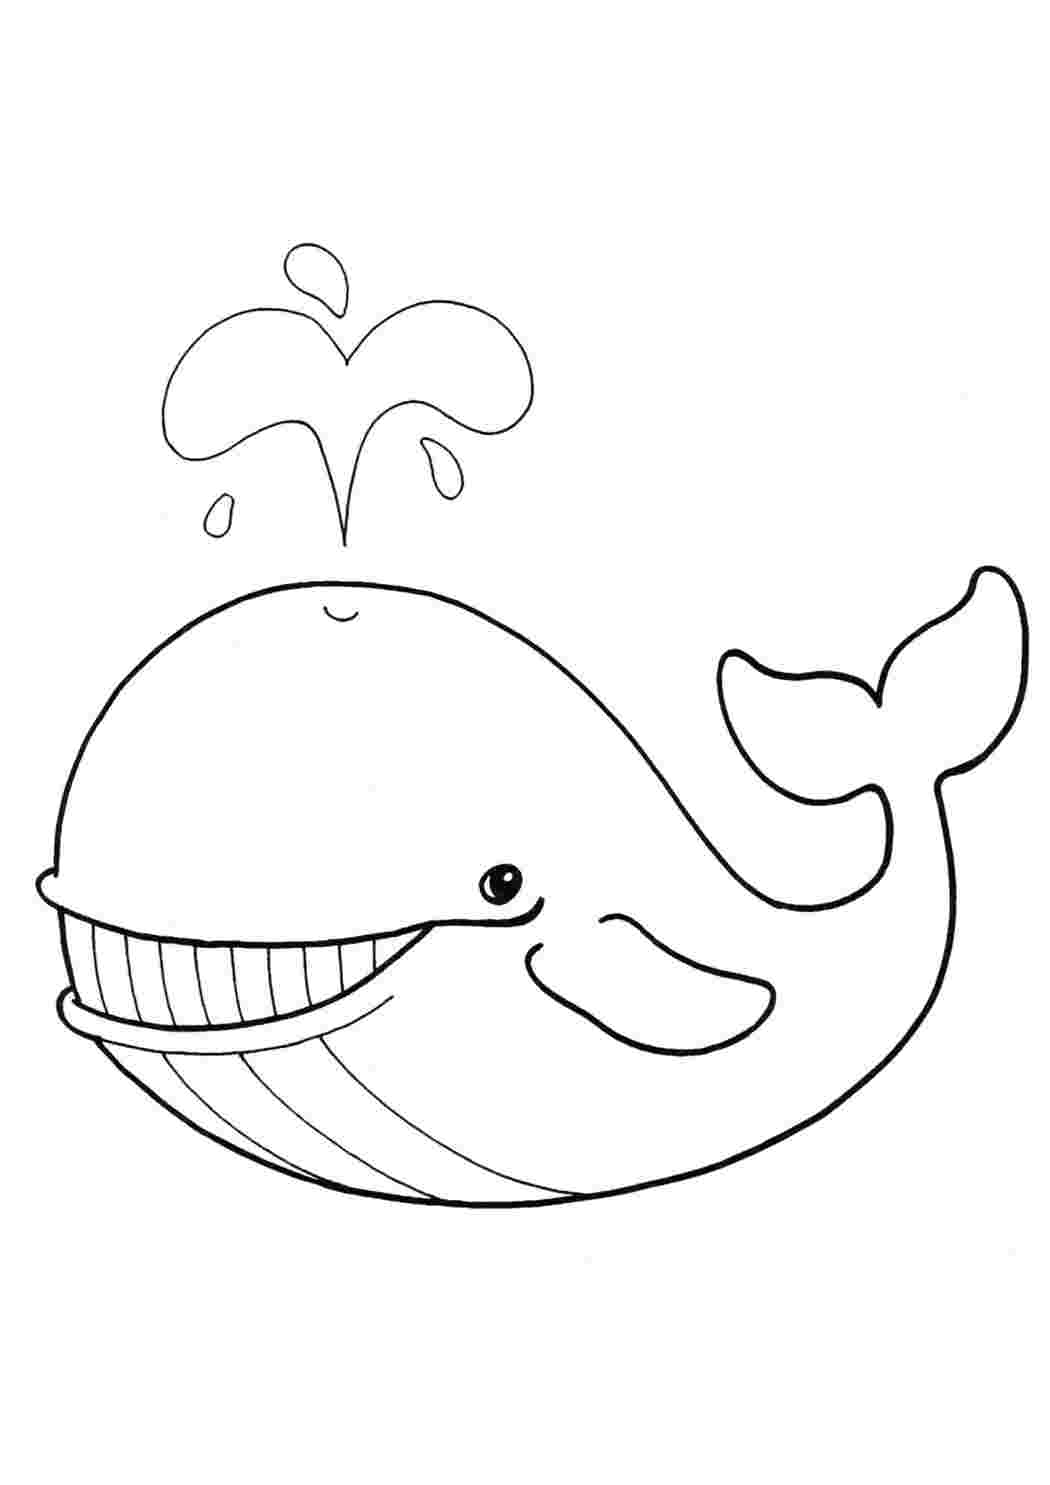 Усатый кит раскраска